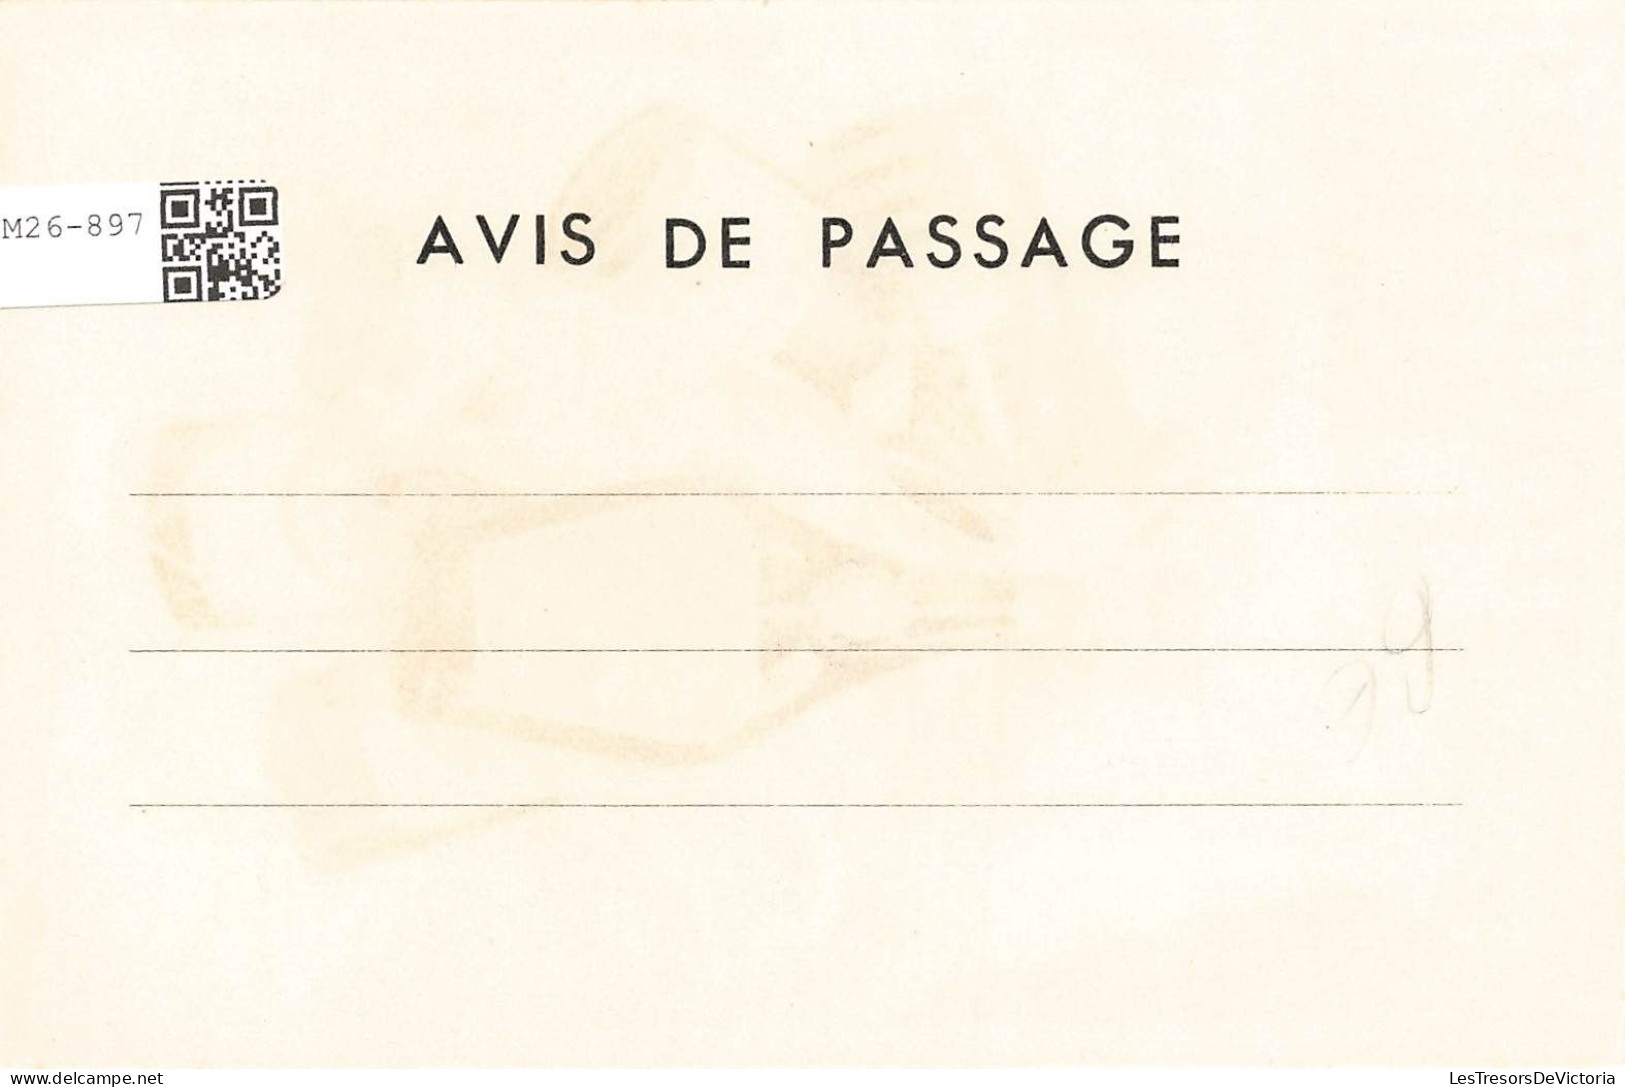 PUBLICITE - Liqueurs Lebert Amboise - Colorisé - Carte Postale Ancienne - Publicité